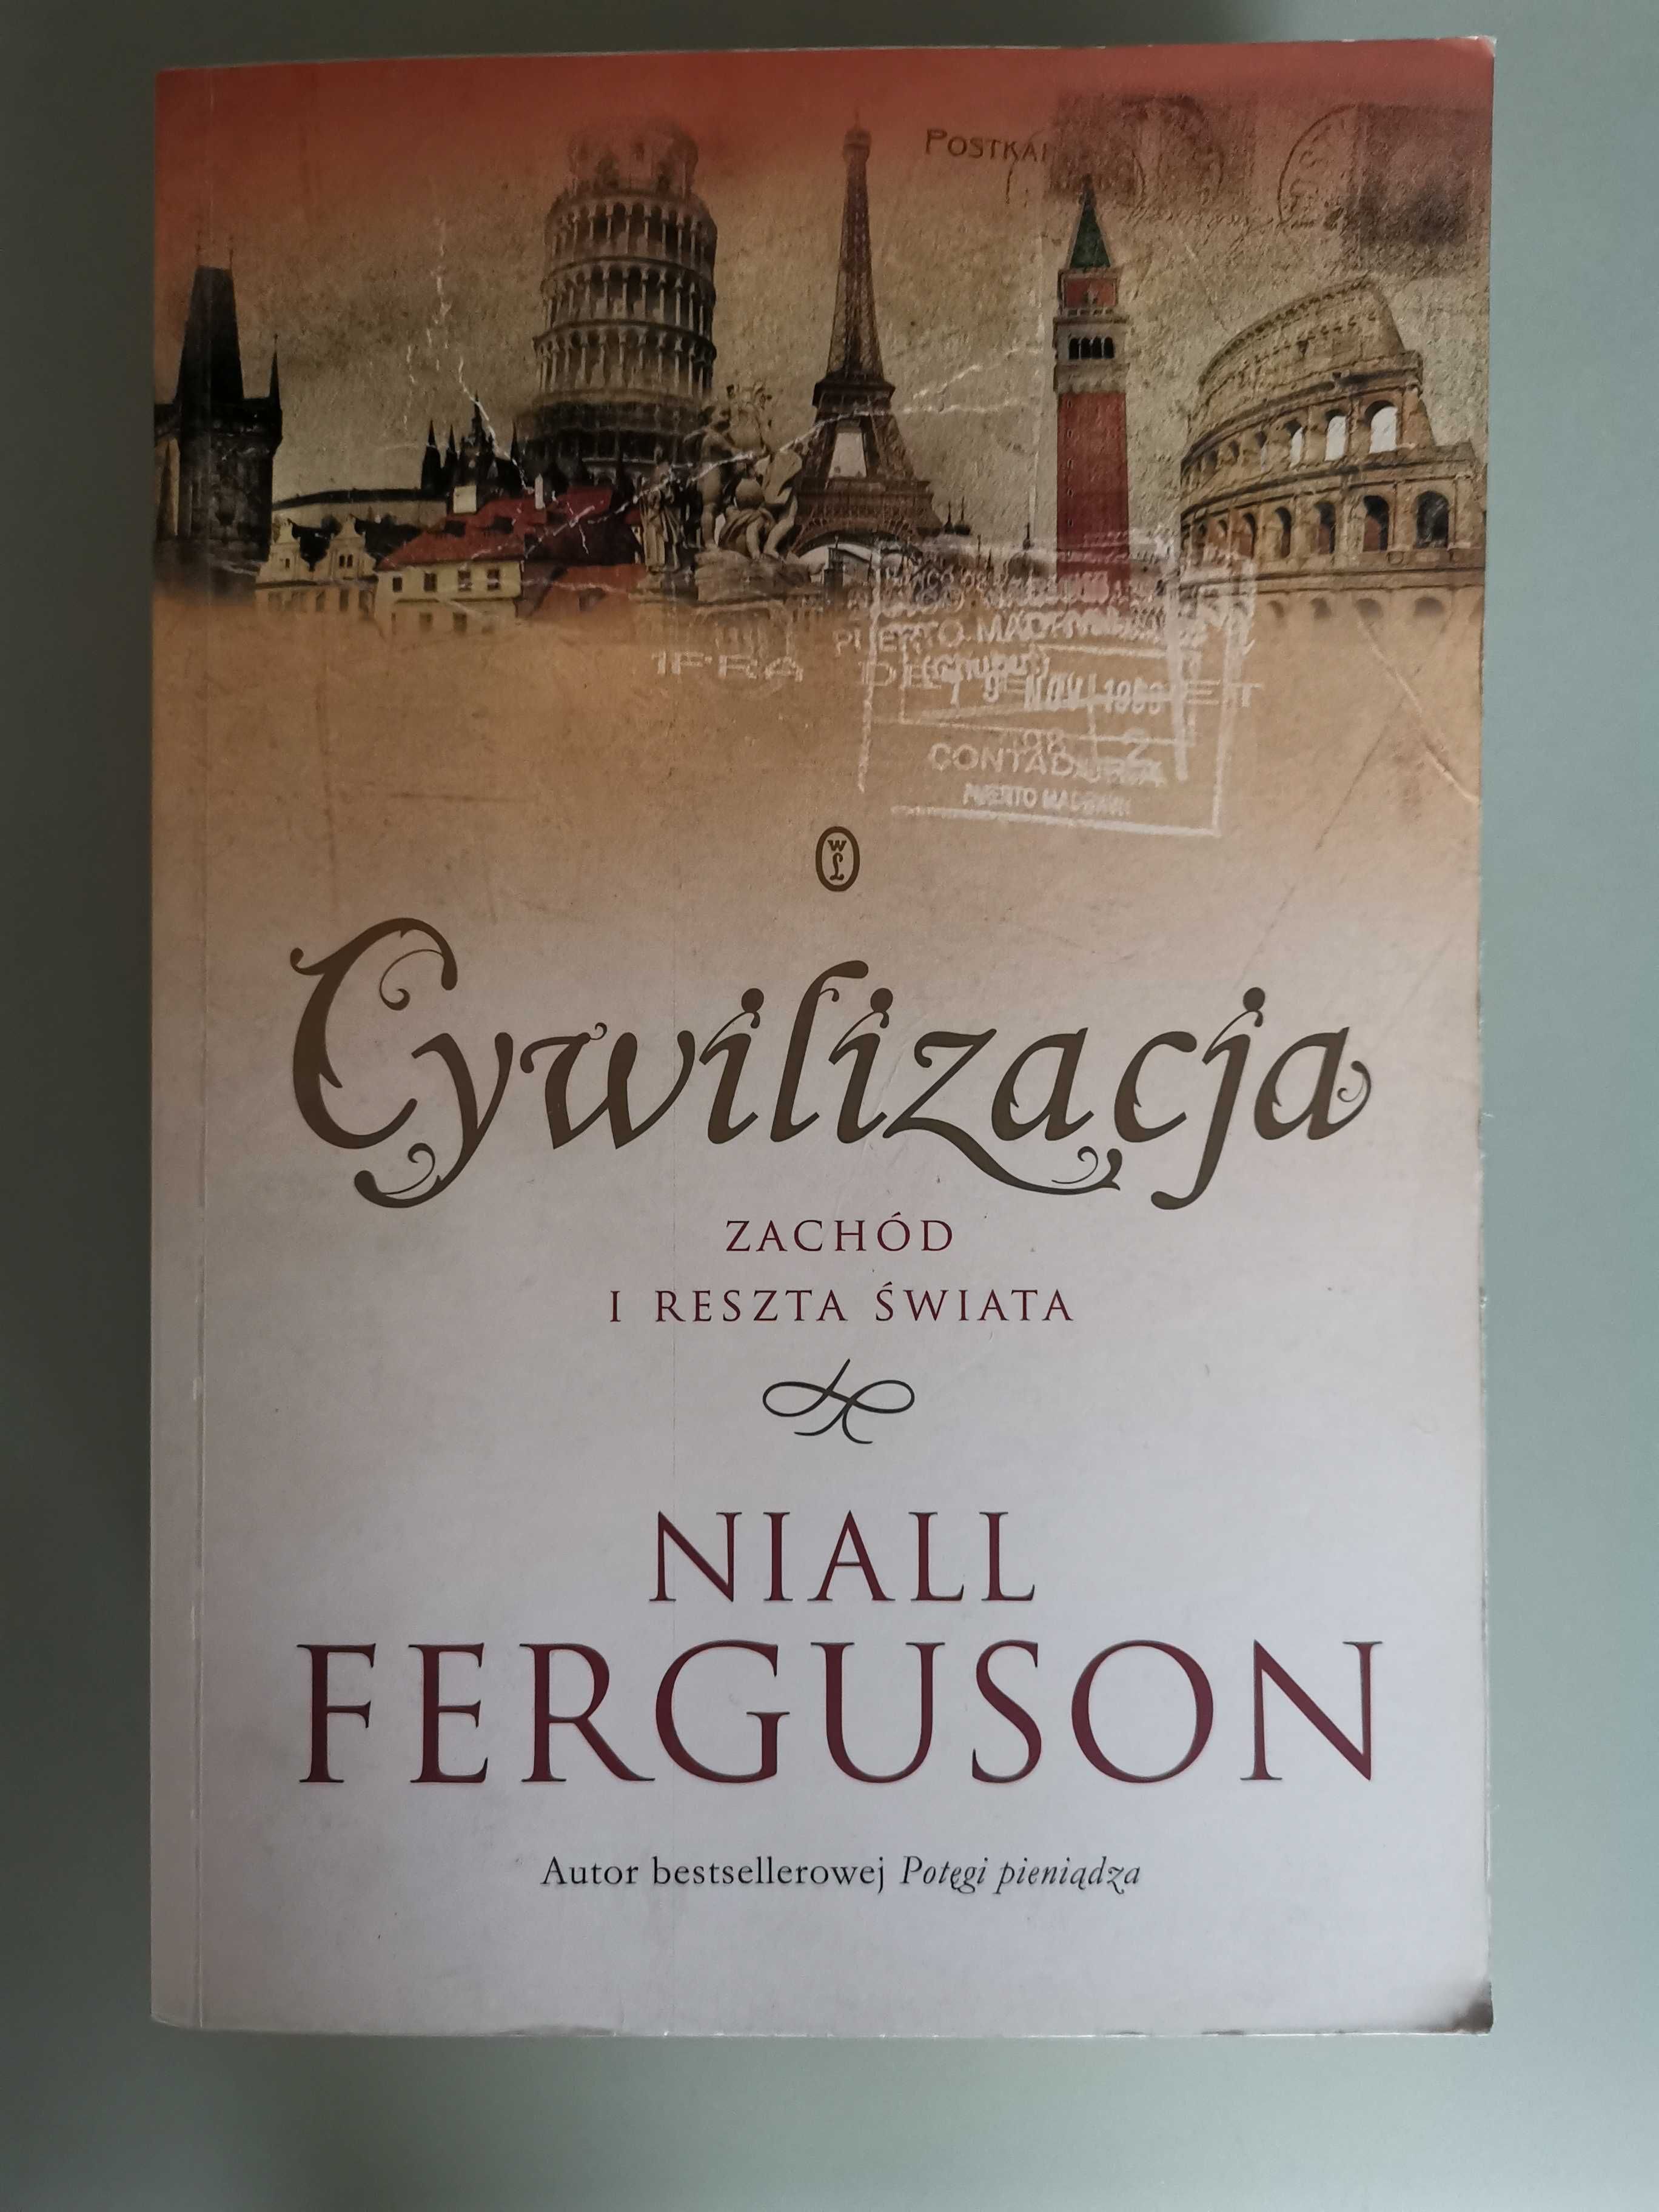 Niall Ferguson "Cywilizacja"